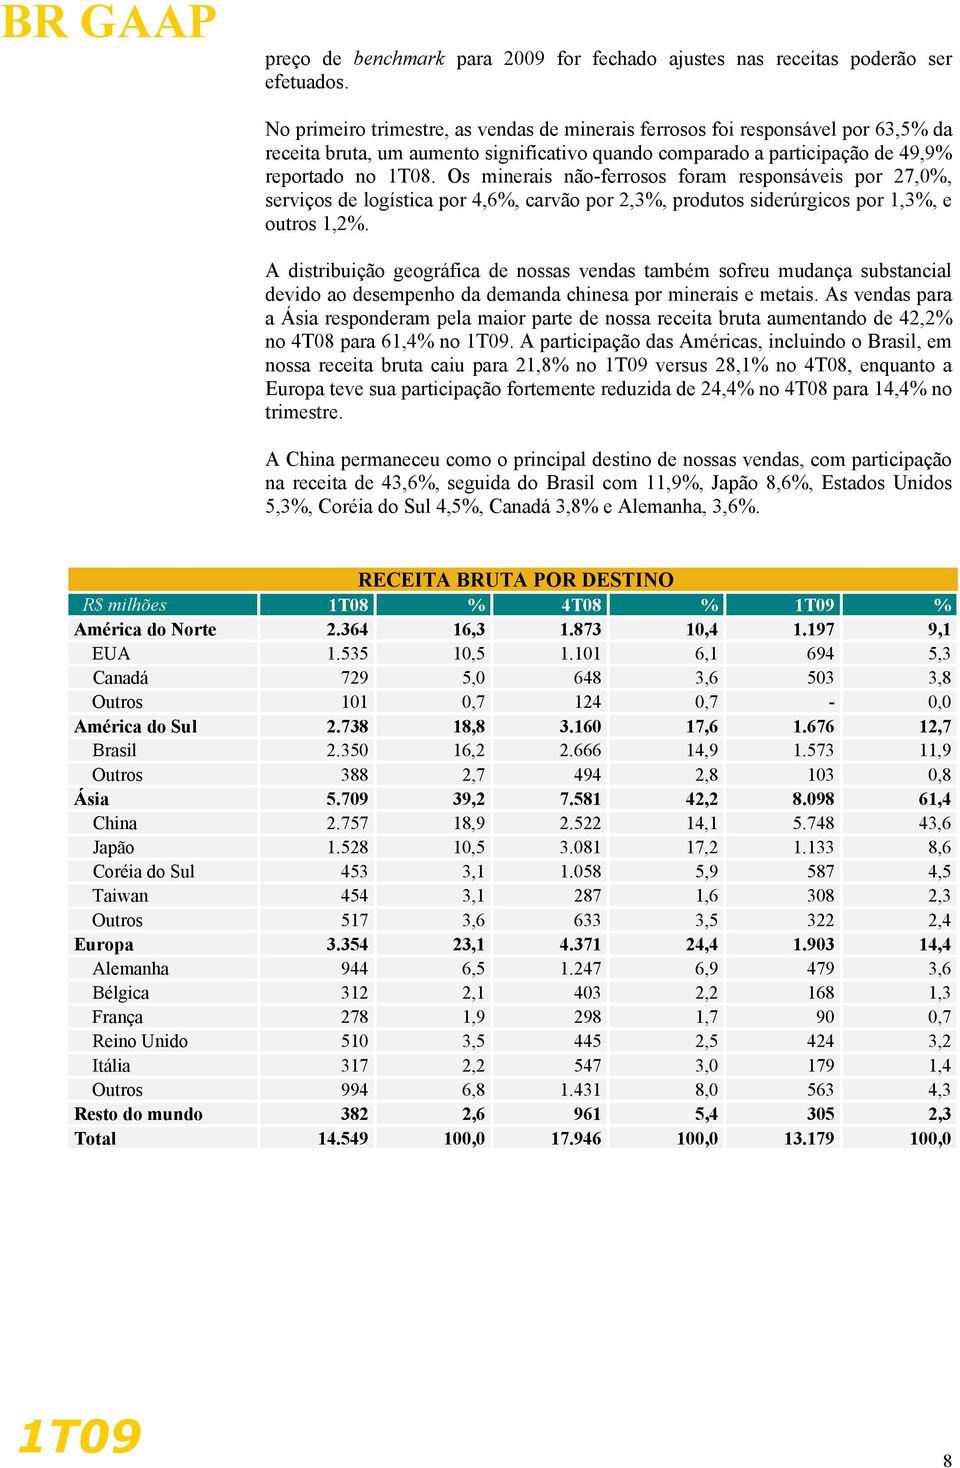 Os minerais não-ferrosos foram responsáveis por 27,0%, serviços de logística por 4,6%, carvão por 2,3%, produtos siderúrgicos por 1,3%, e outros 1,2%.